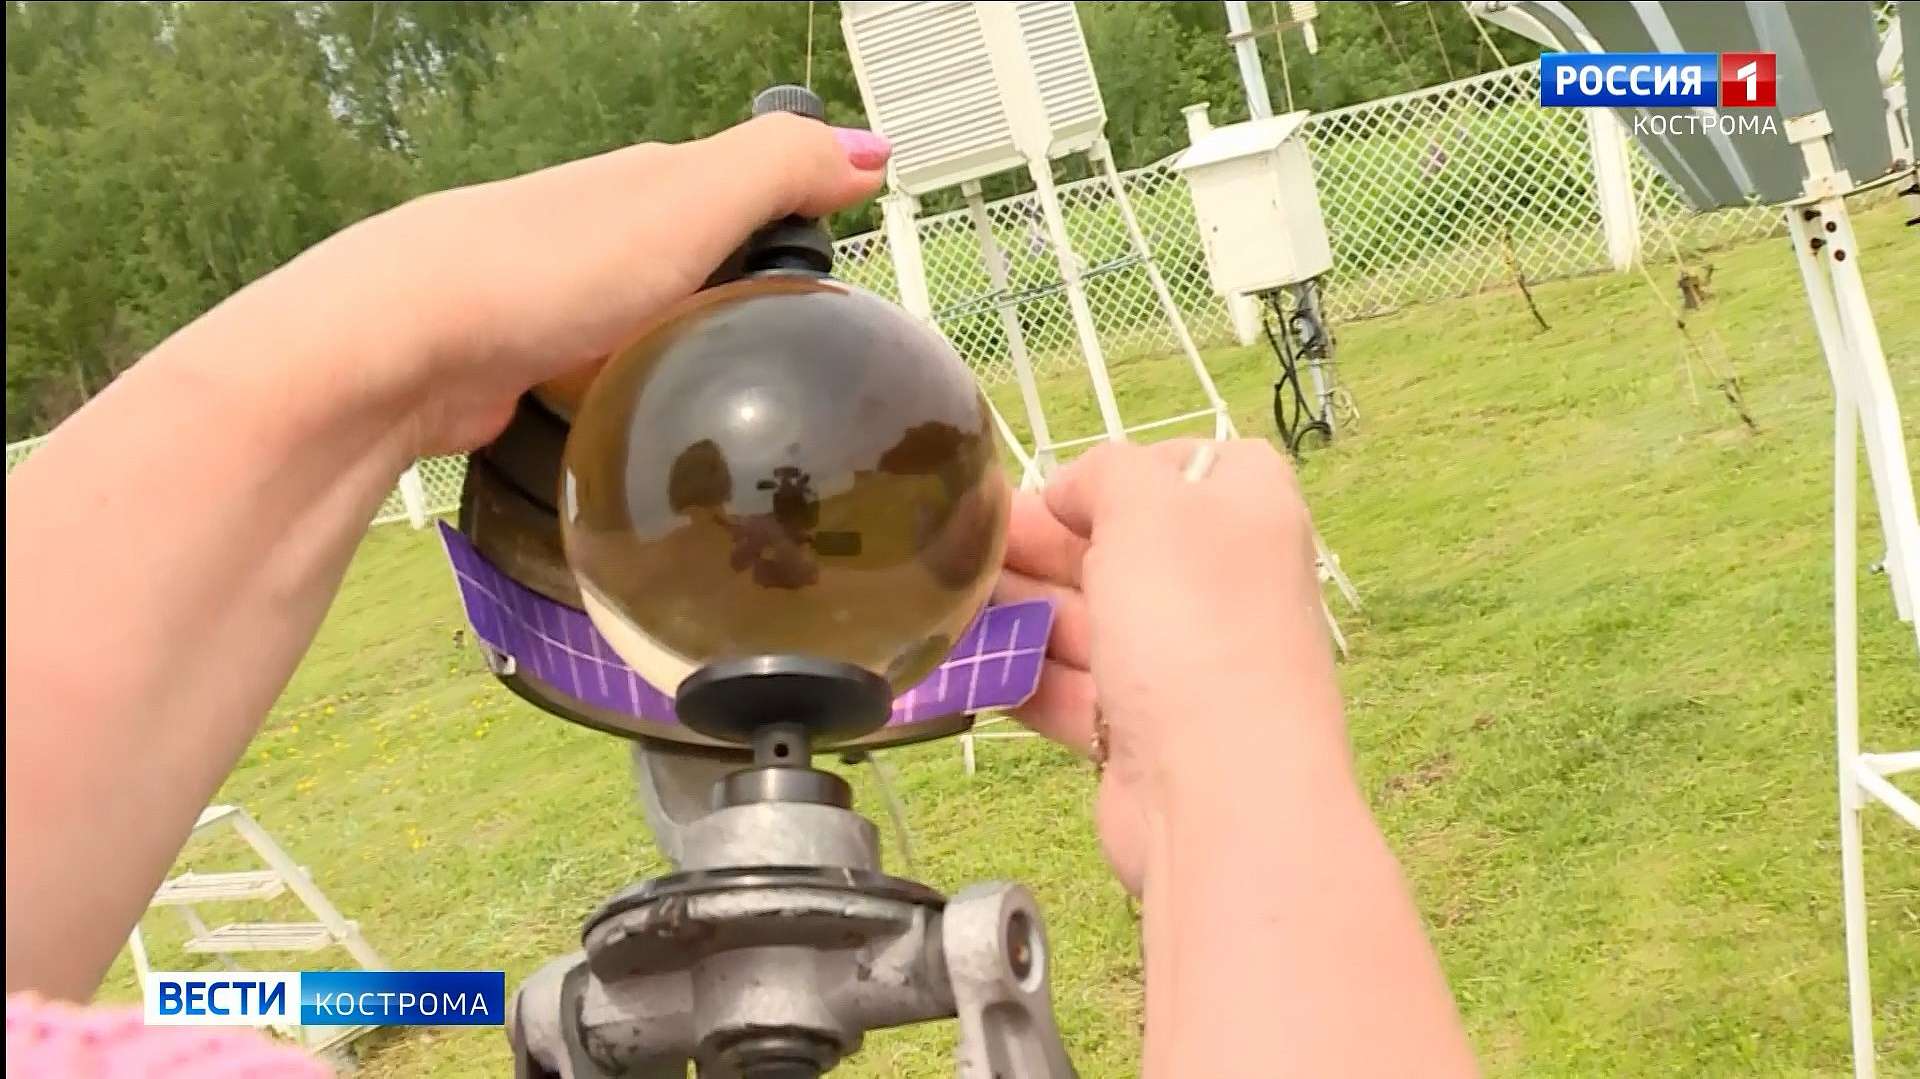 Метеорологи в Костроме вместо примет и молитв предпочитают стеклянный шар и градусники